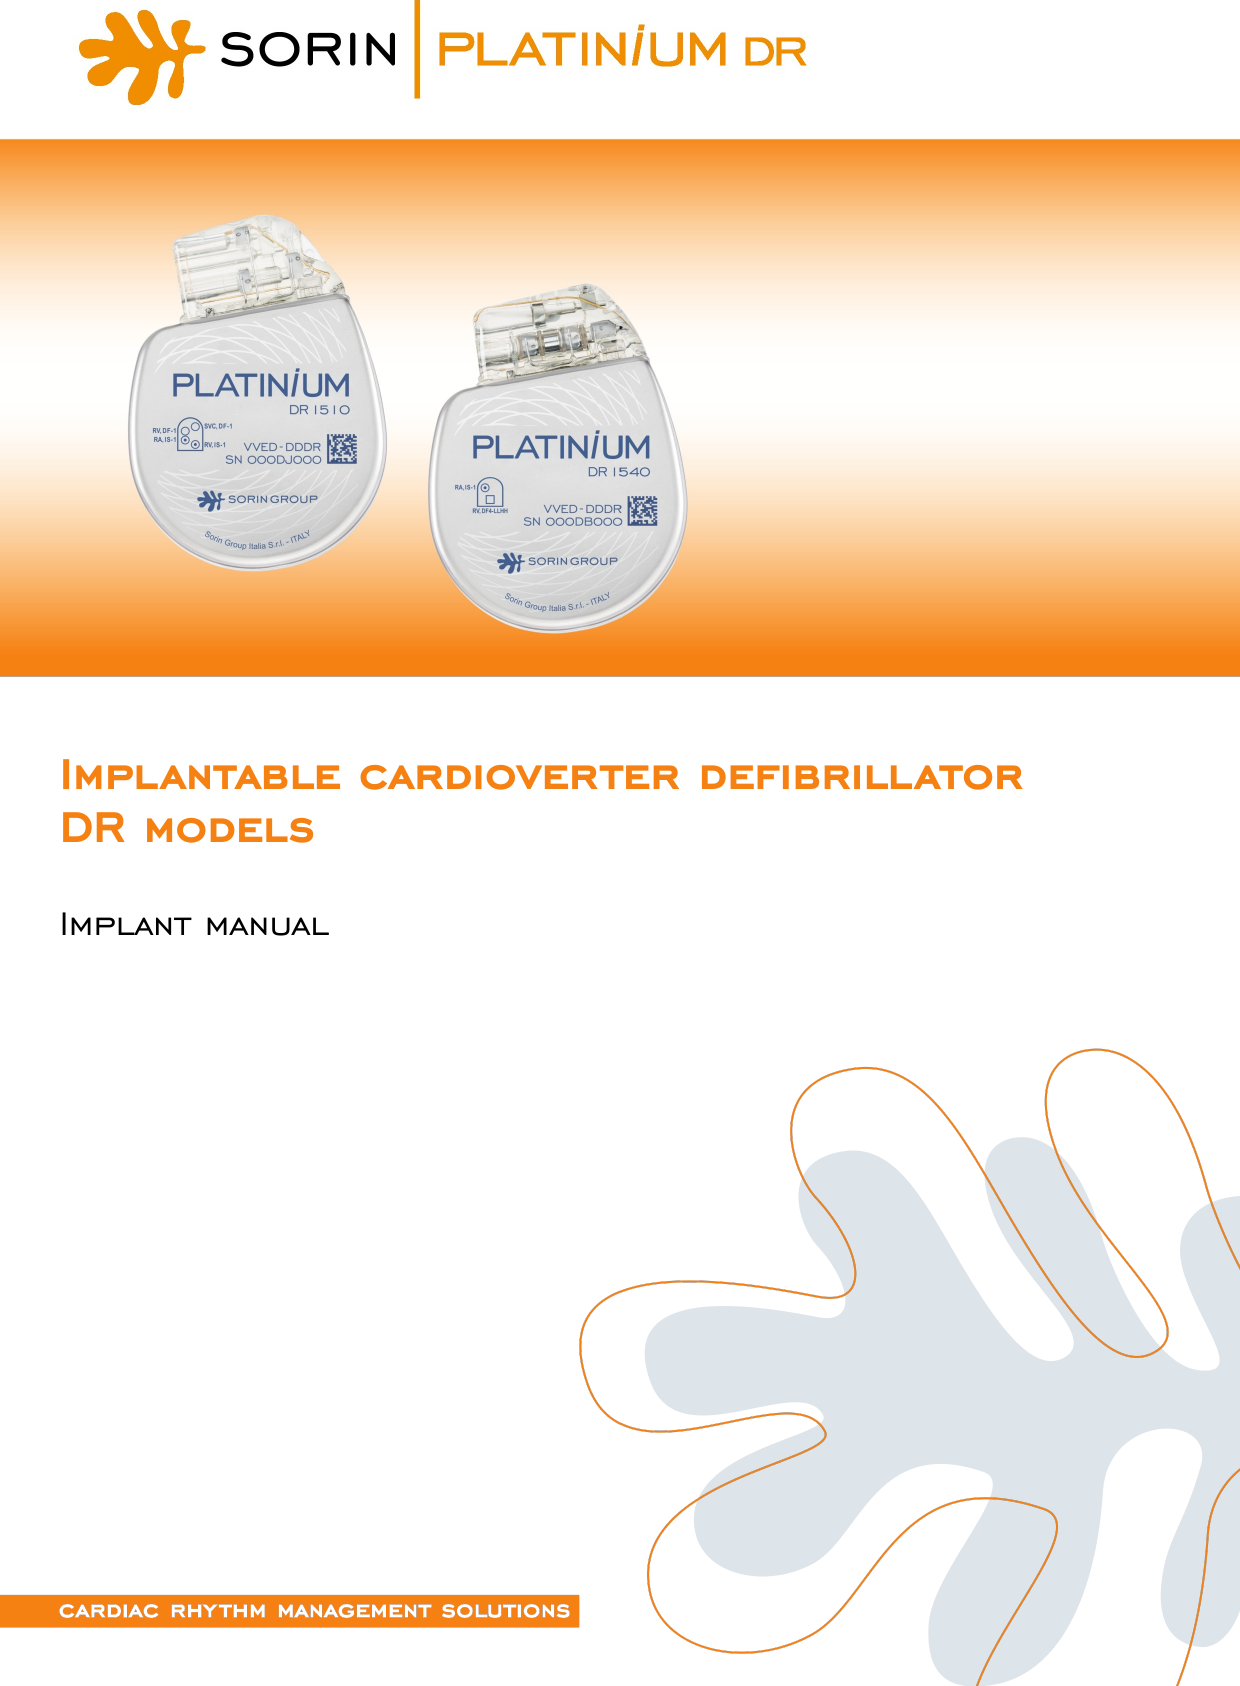 Implantable cardioverter defibrillatorDR modelsImplant manual